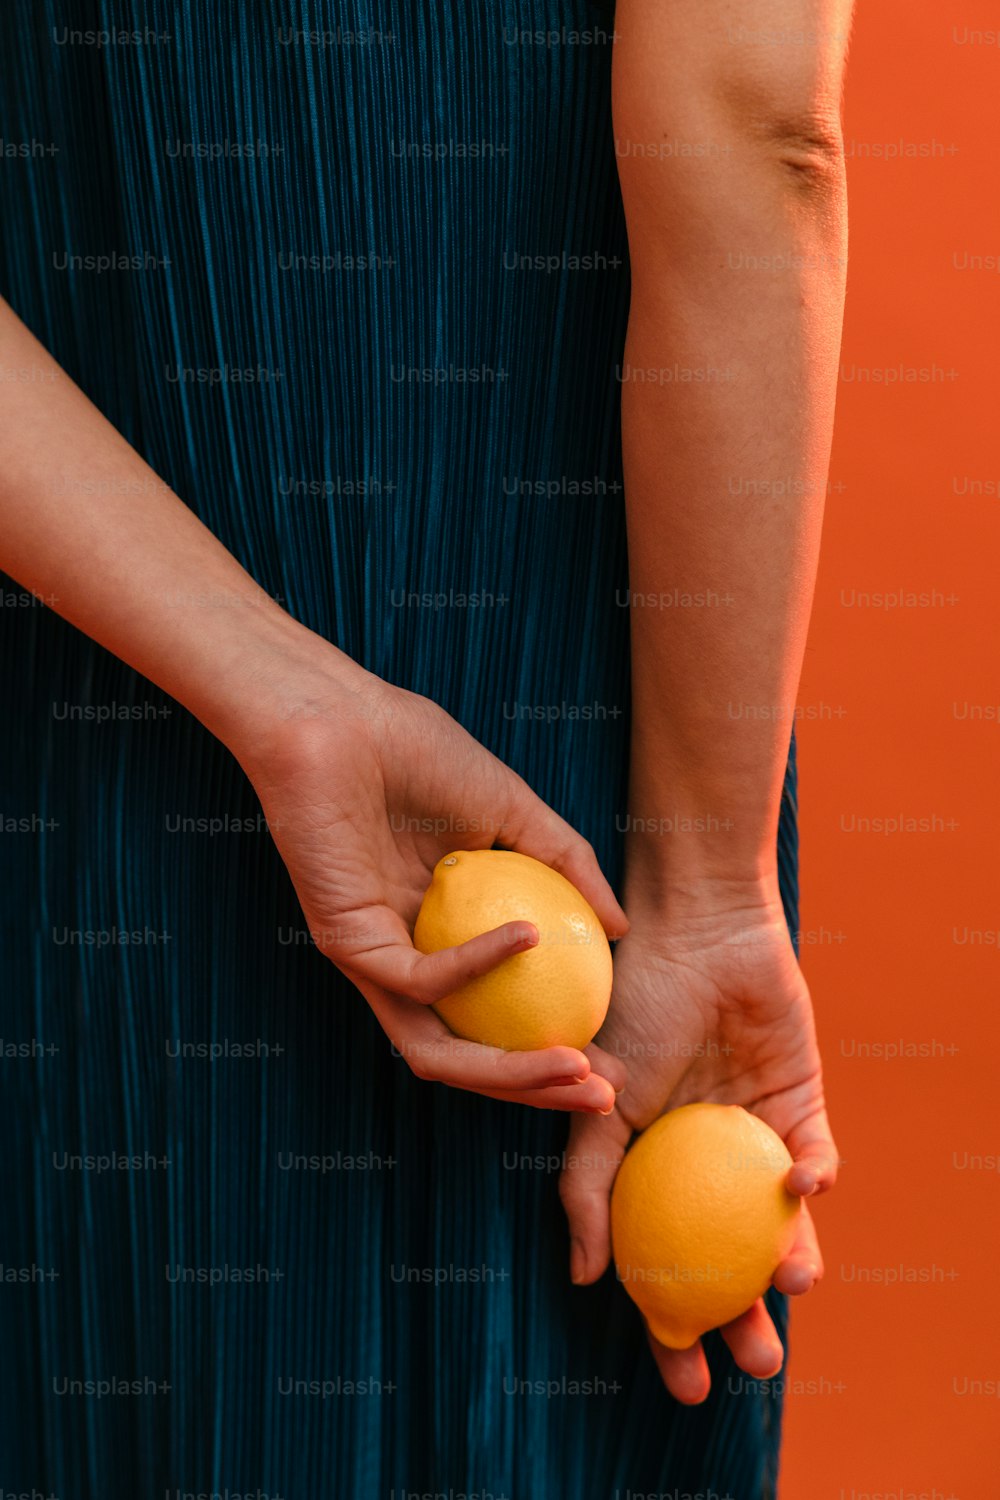 オレンジを2つ手に持つ女性